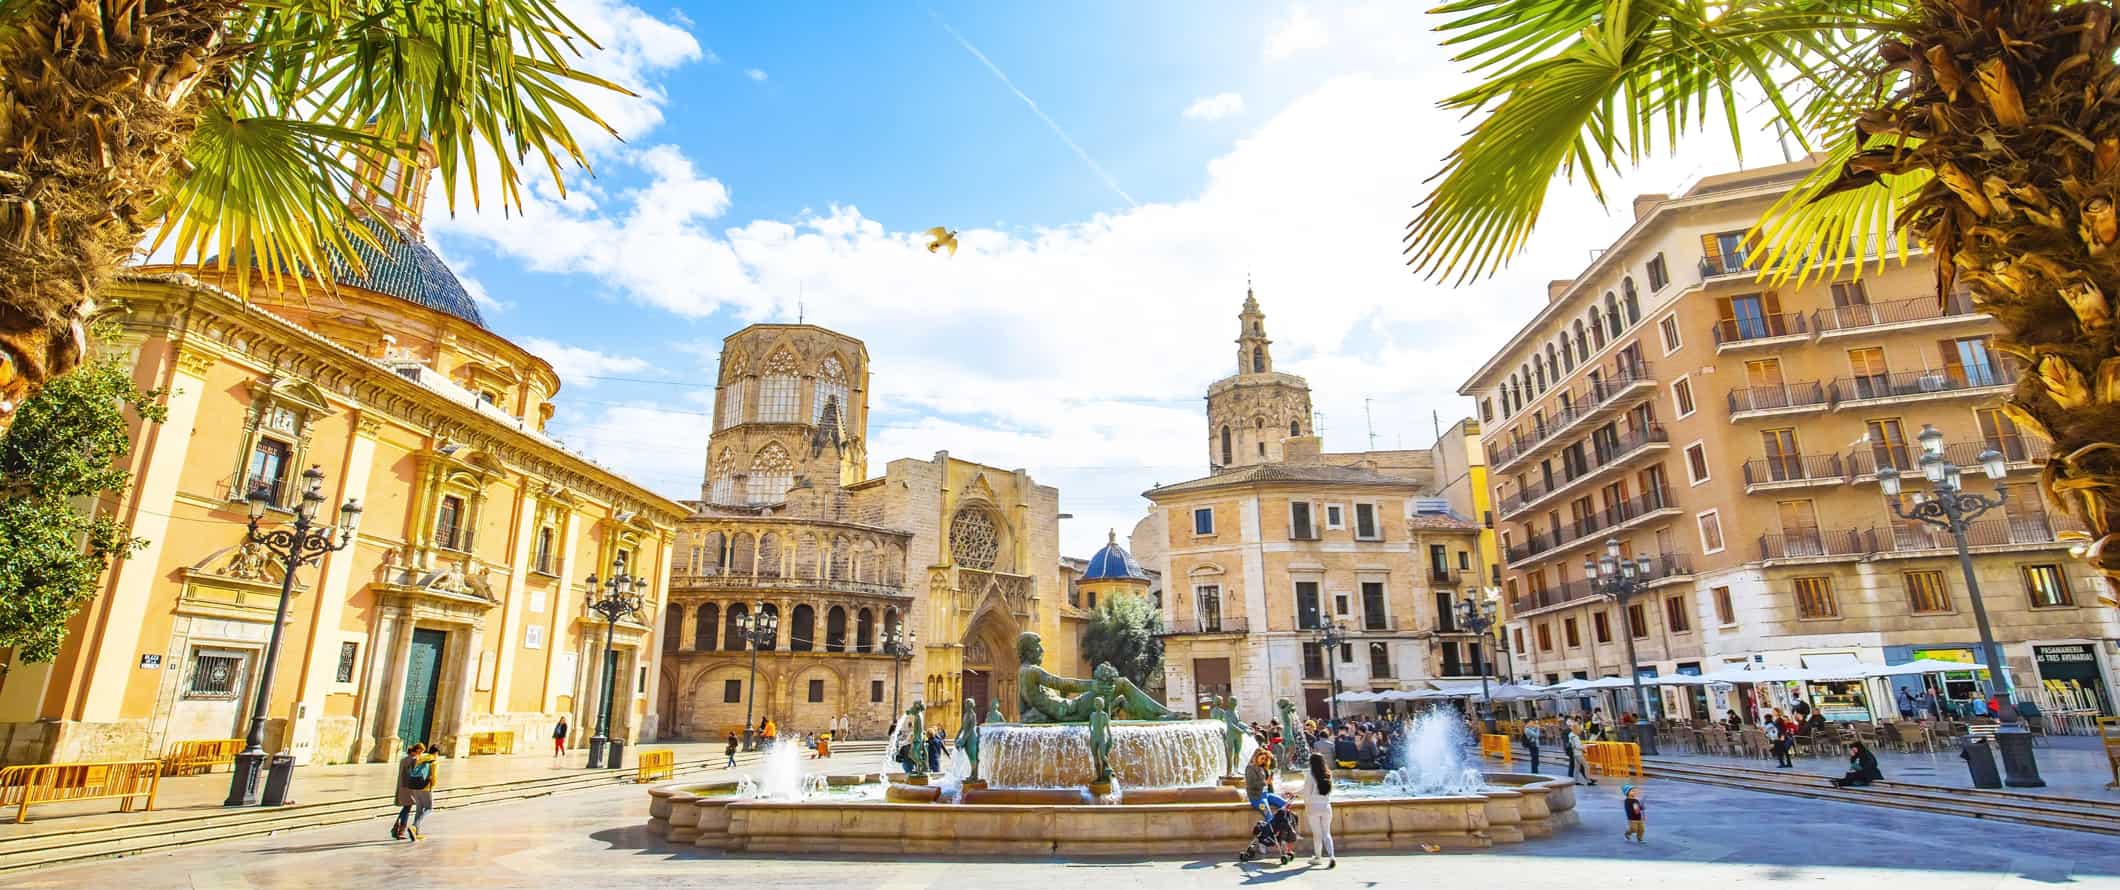 Impressionante arquitetura histórica de Valência, Espanha, com edifícios antigos e uma fonte rodeada de pessoas